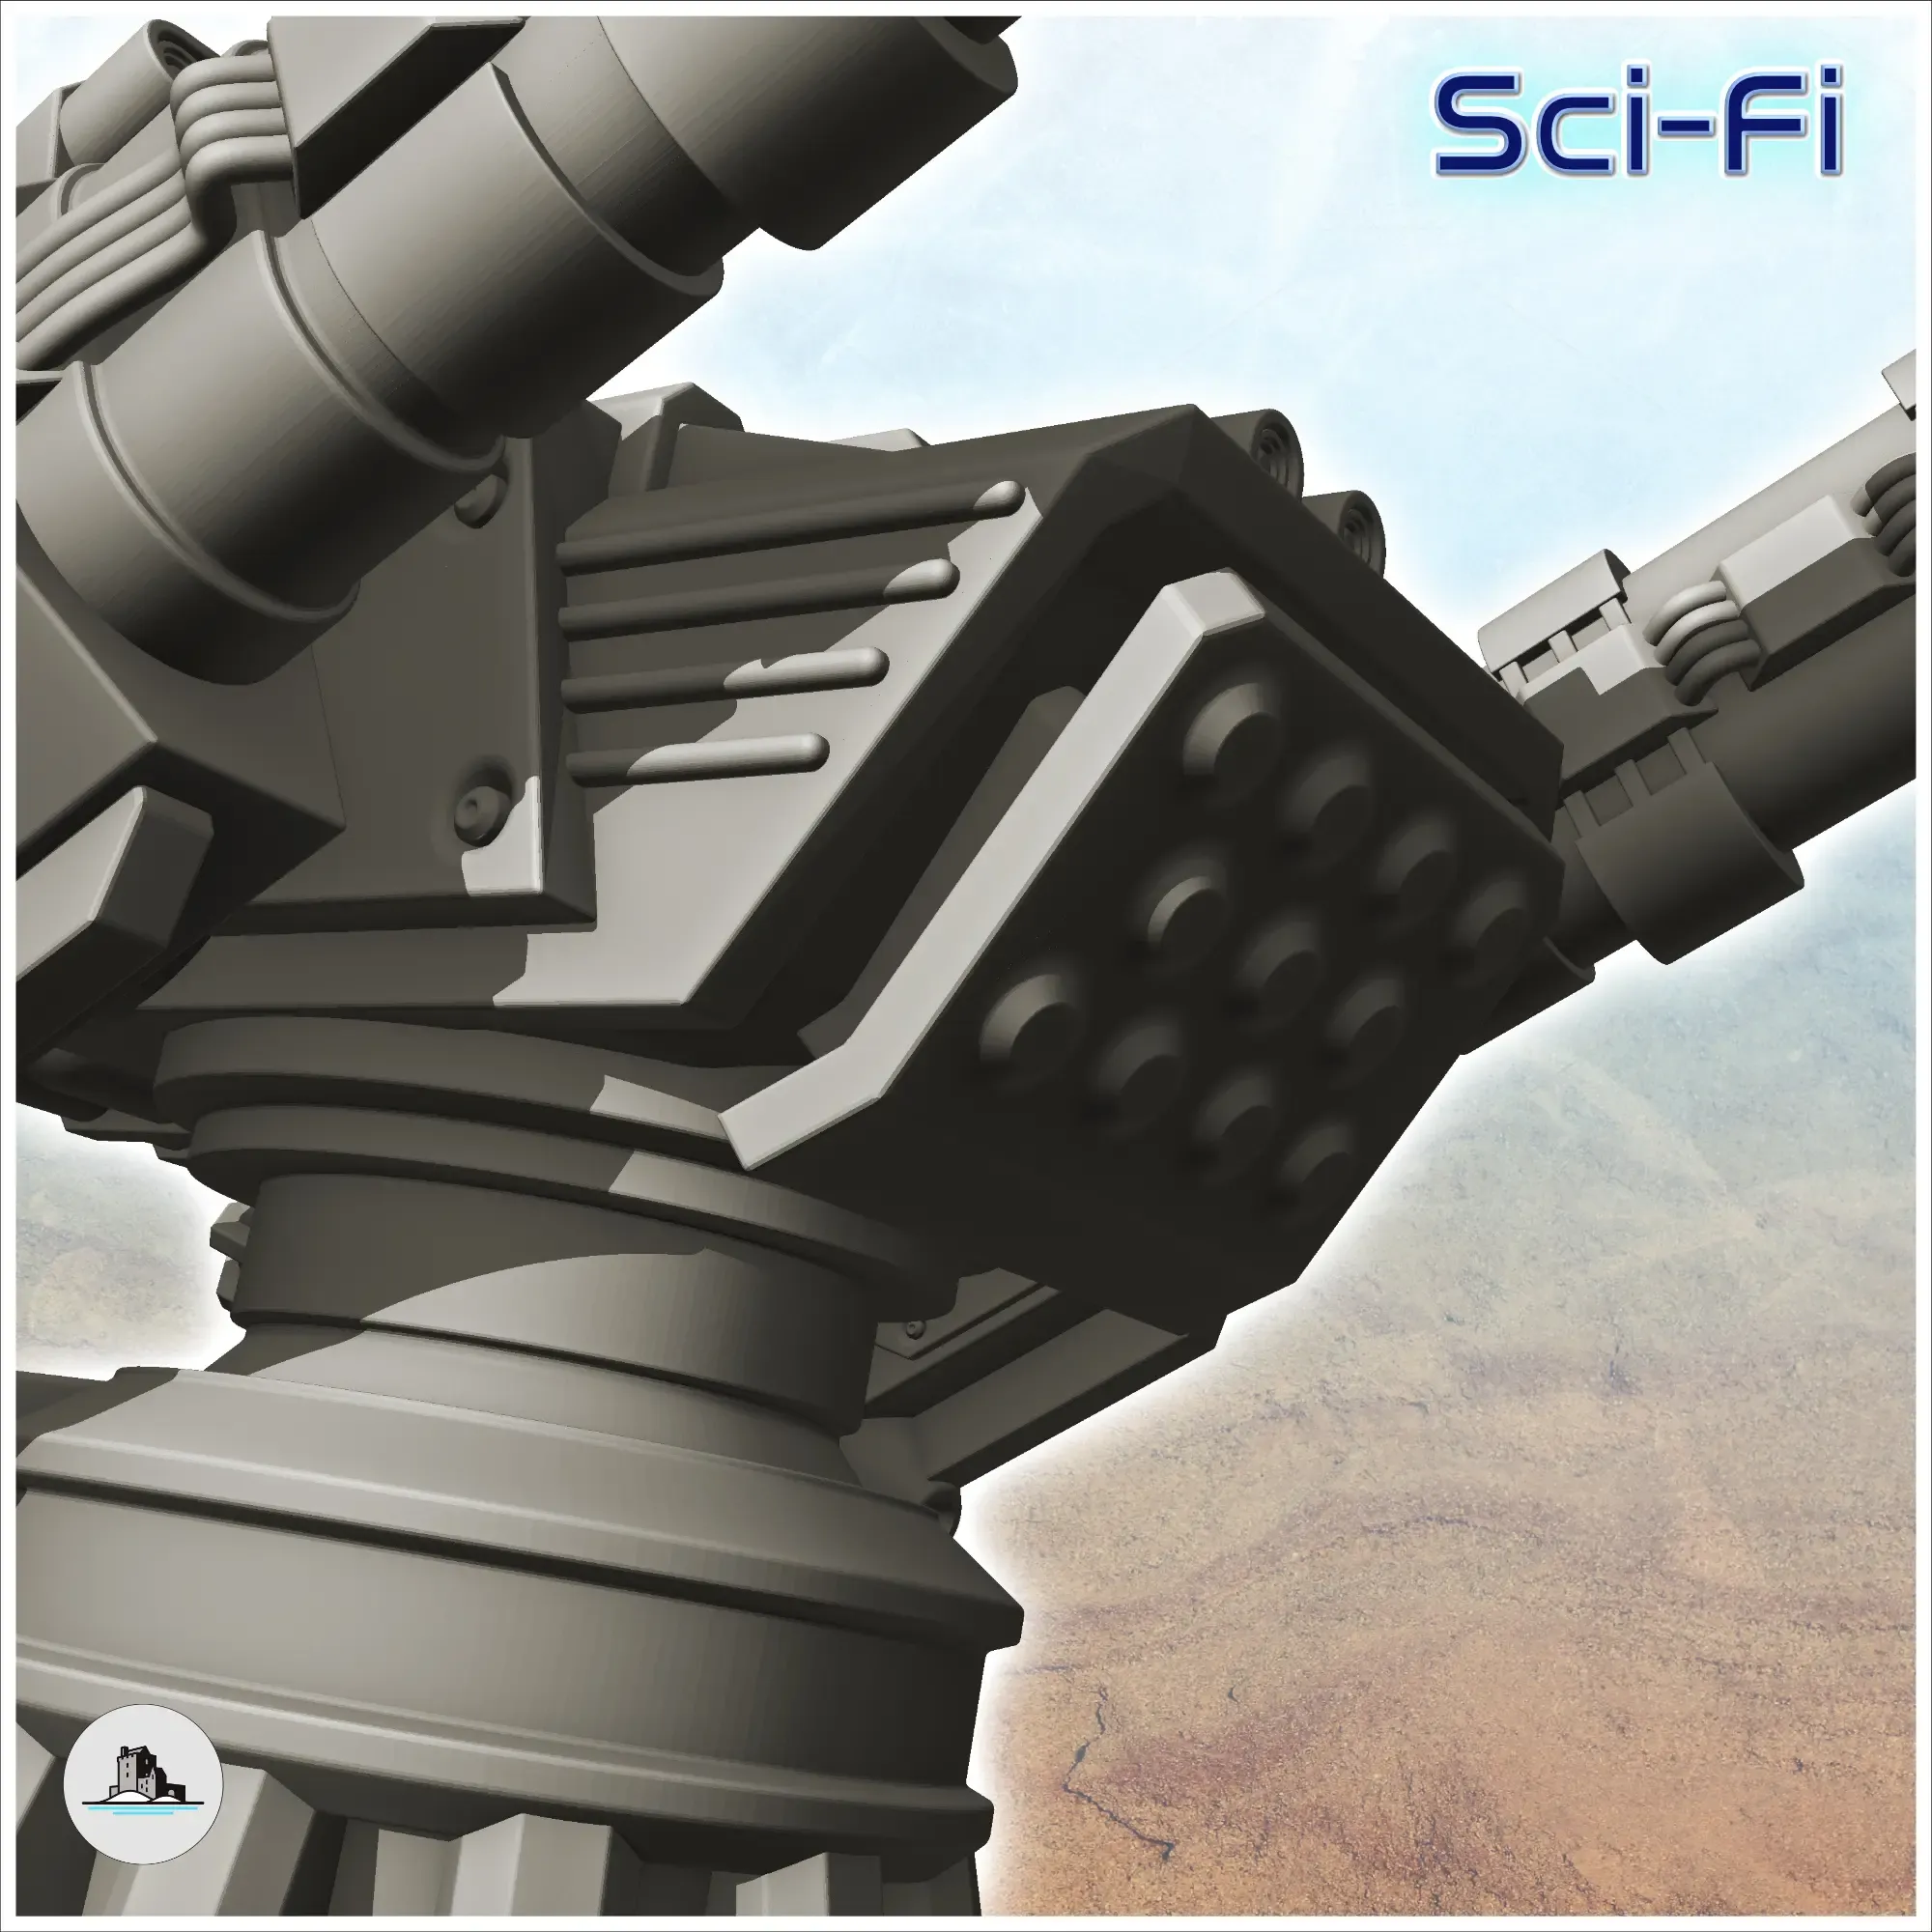 Swivel firing platform - Terrain Scifi Science fiction SF